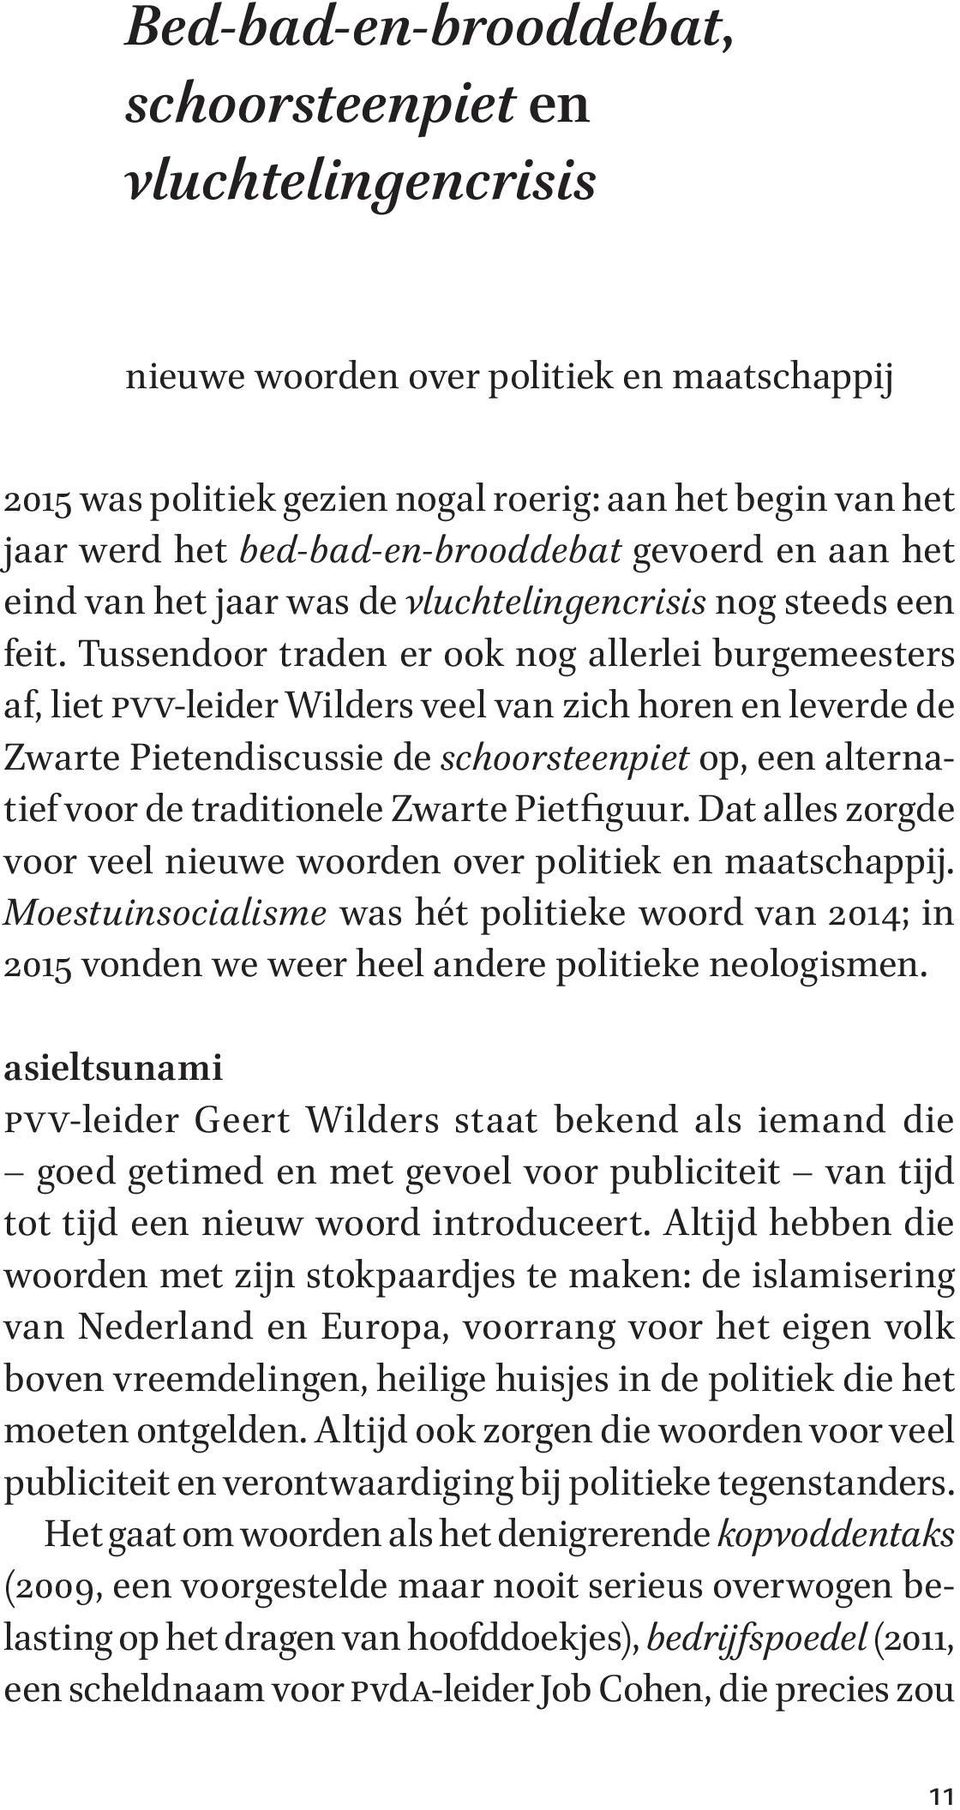 Tussendoor traden er ook nog allerlei burgemeesters af, liet pvv-leider Wilders veel van zich horen en leverde de Zwarte Pietendiscussie de schoorsteenpiet op, een alternatief voor de traditionele